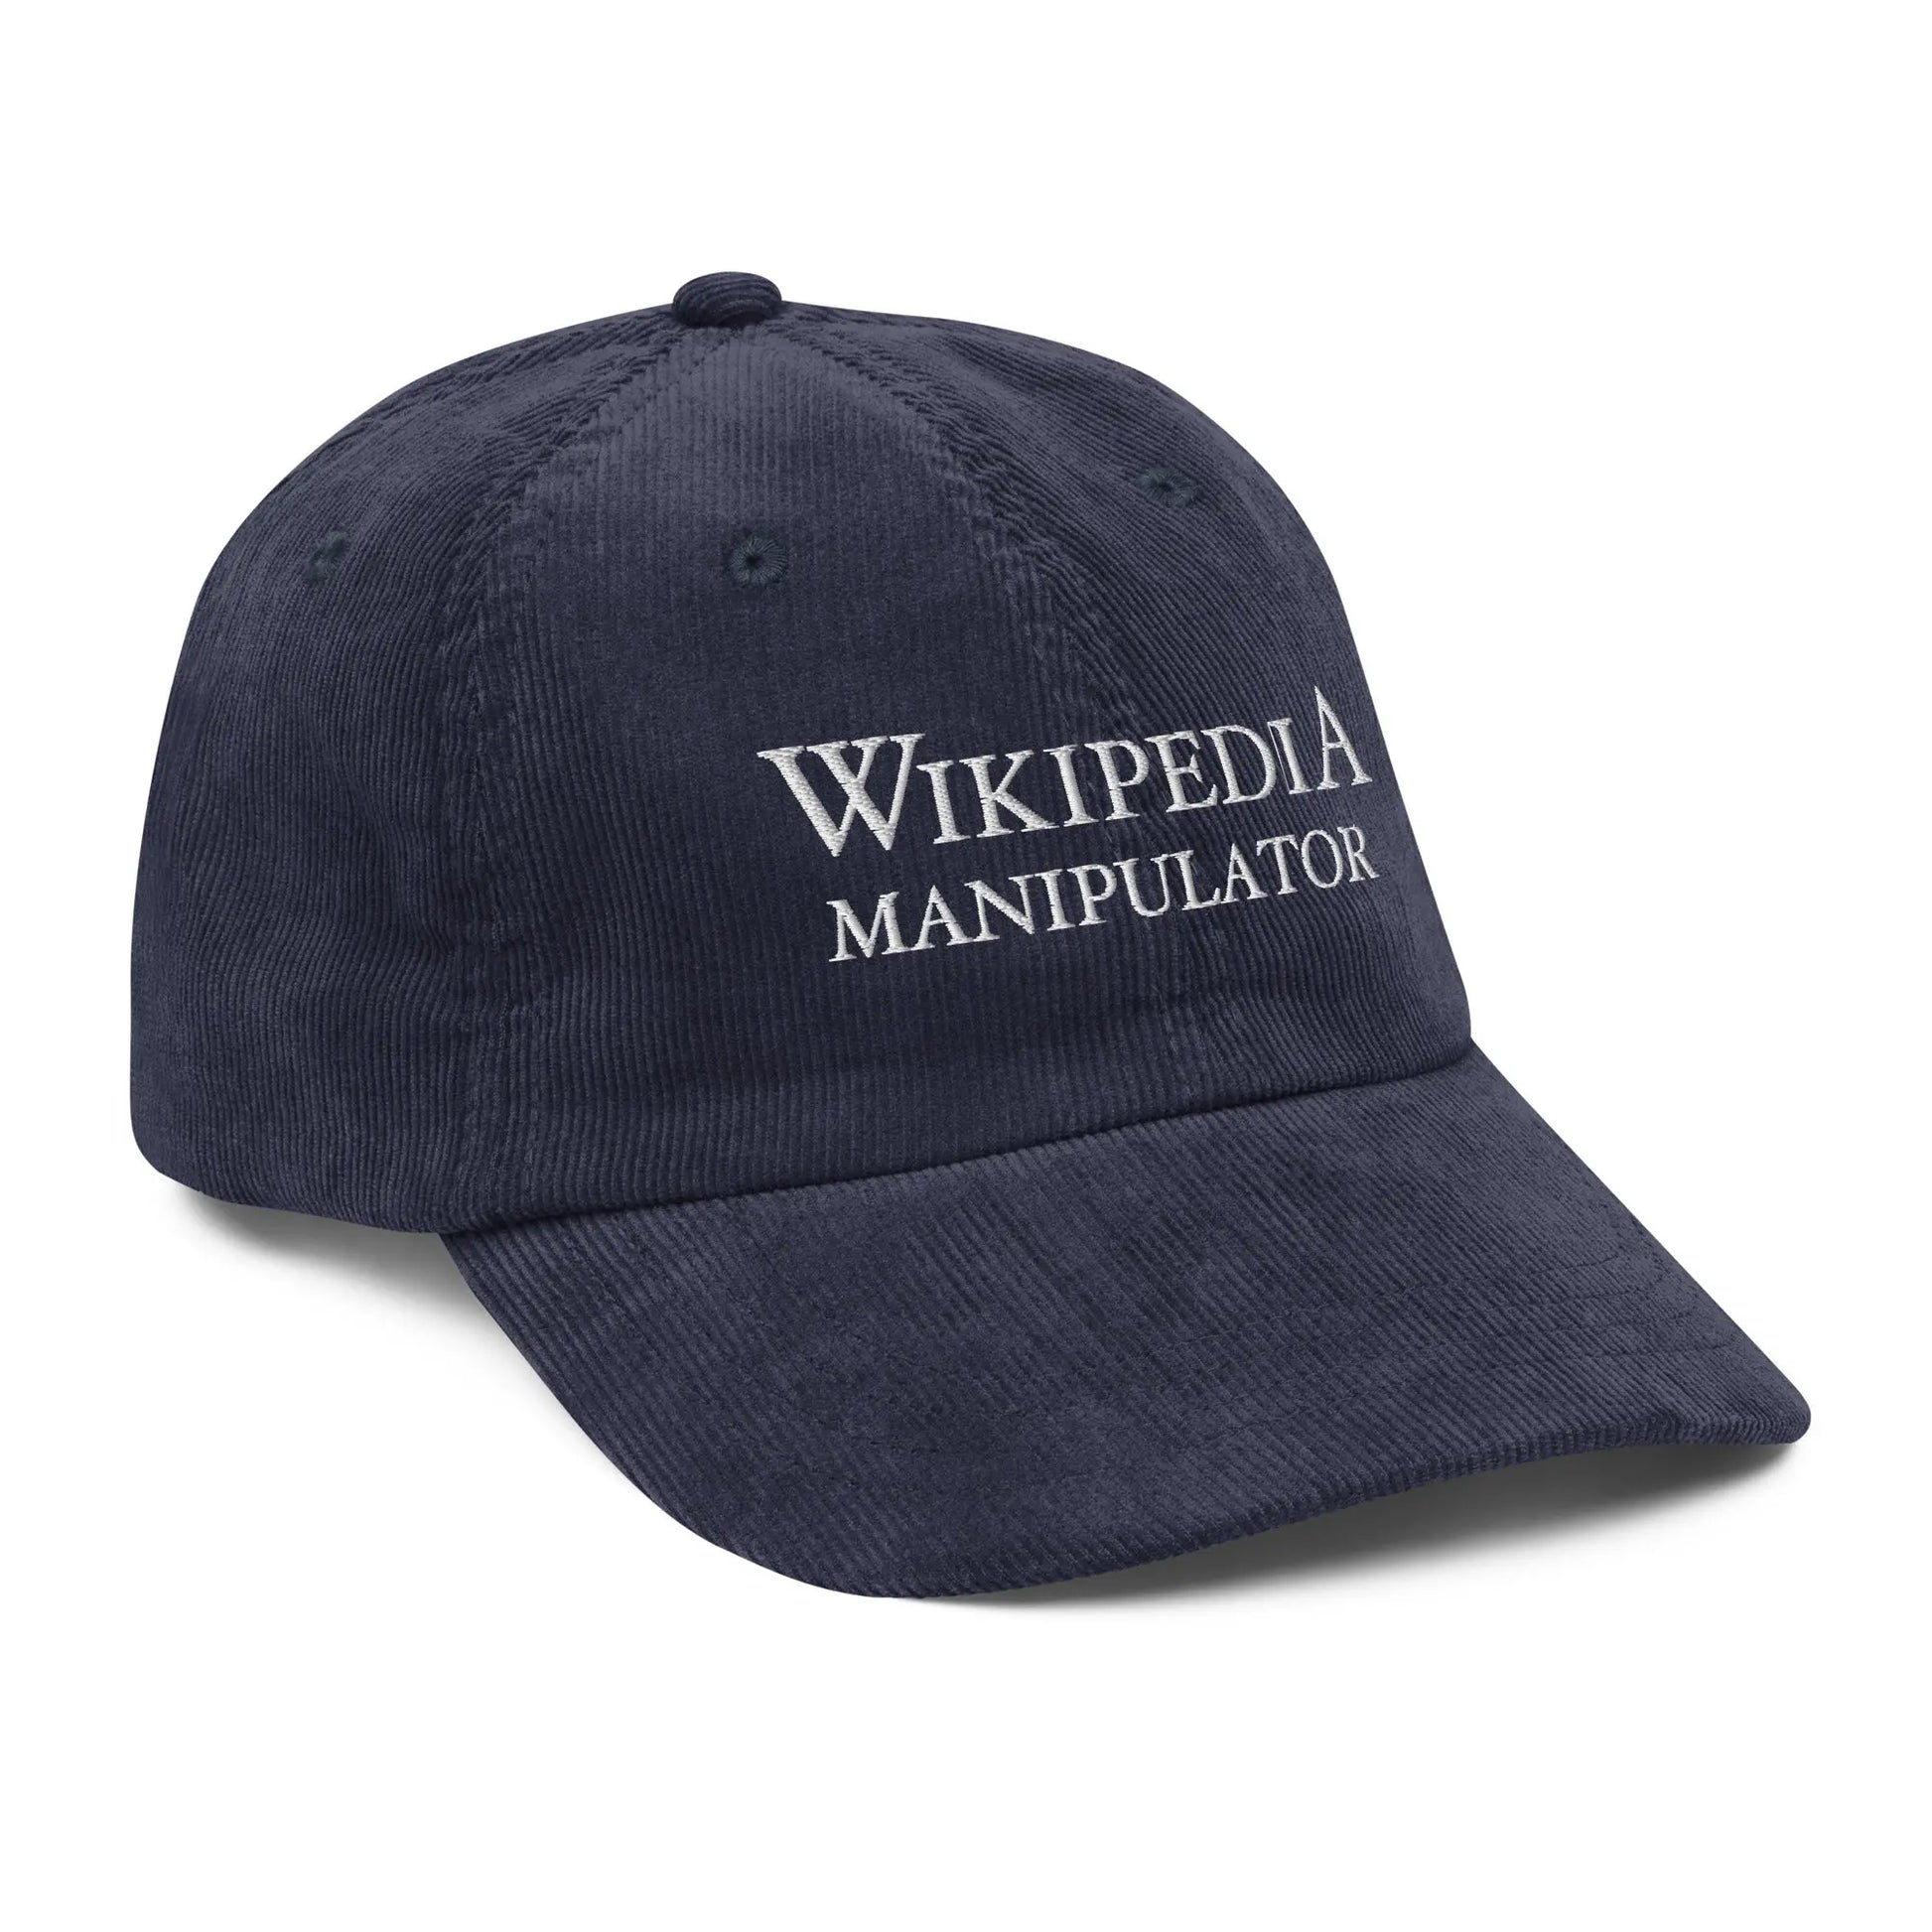 Trucker hat - Wikipedia